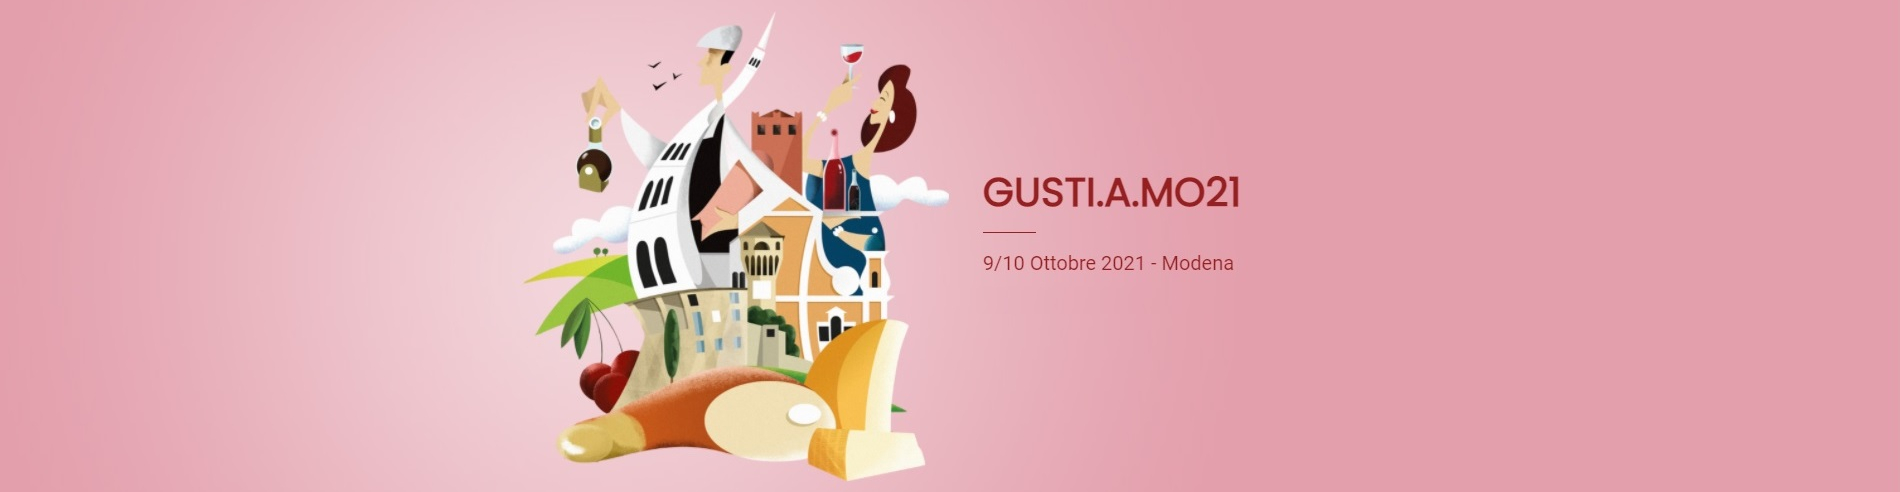 GUSTI.A.MO21 - Conferenza stampa 05 ottobre 2021 